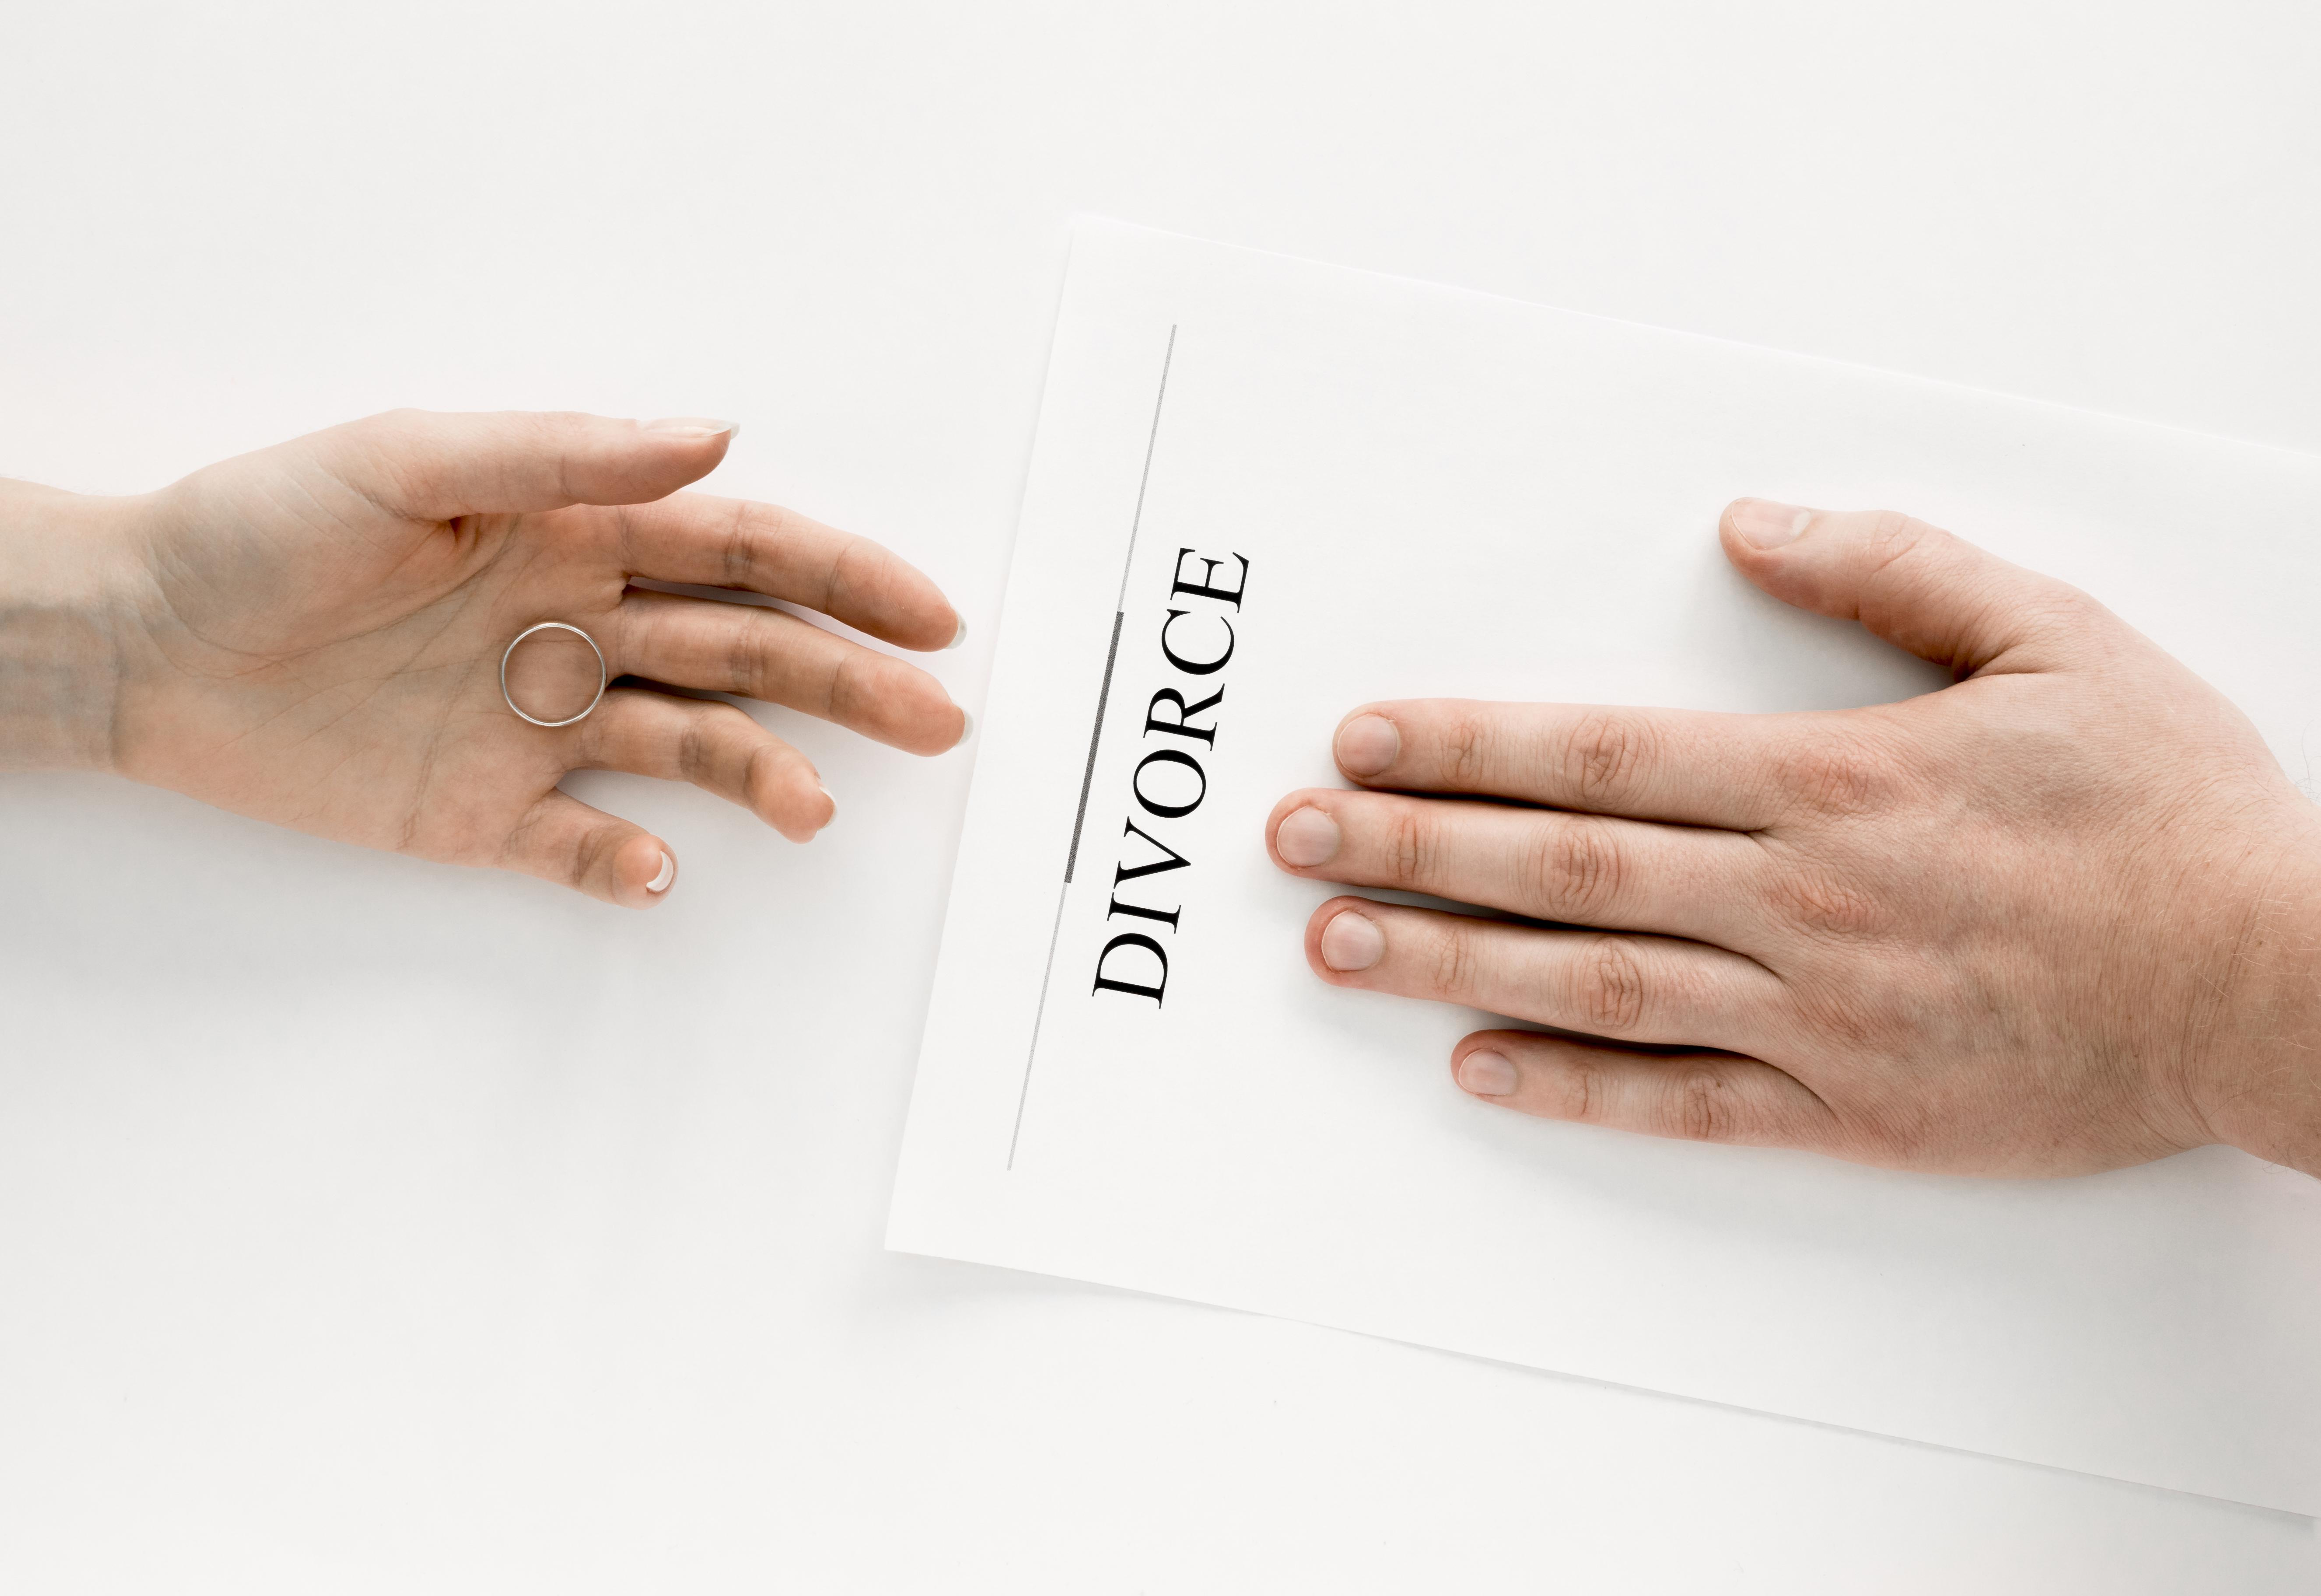 دليل شامل حول الطلاق في تونس - نصائح وإرشادات